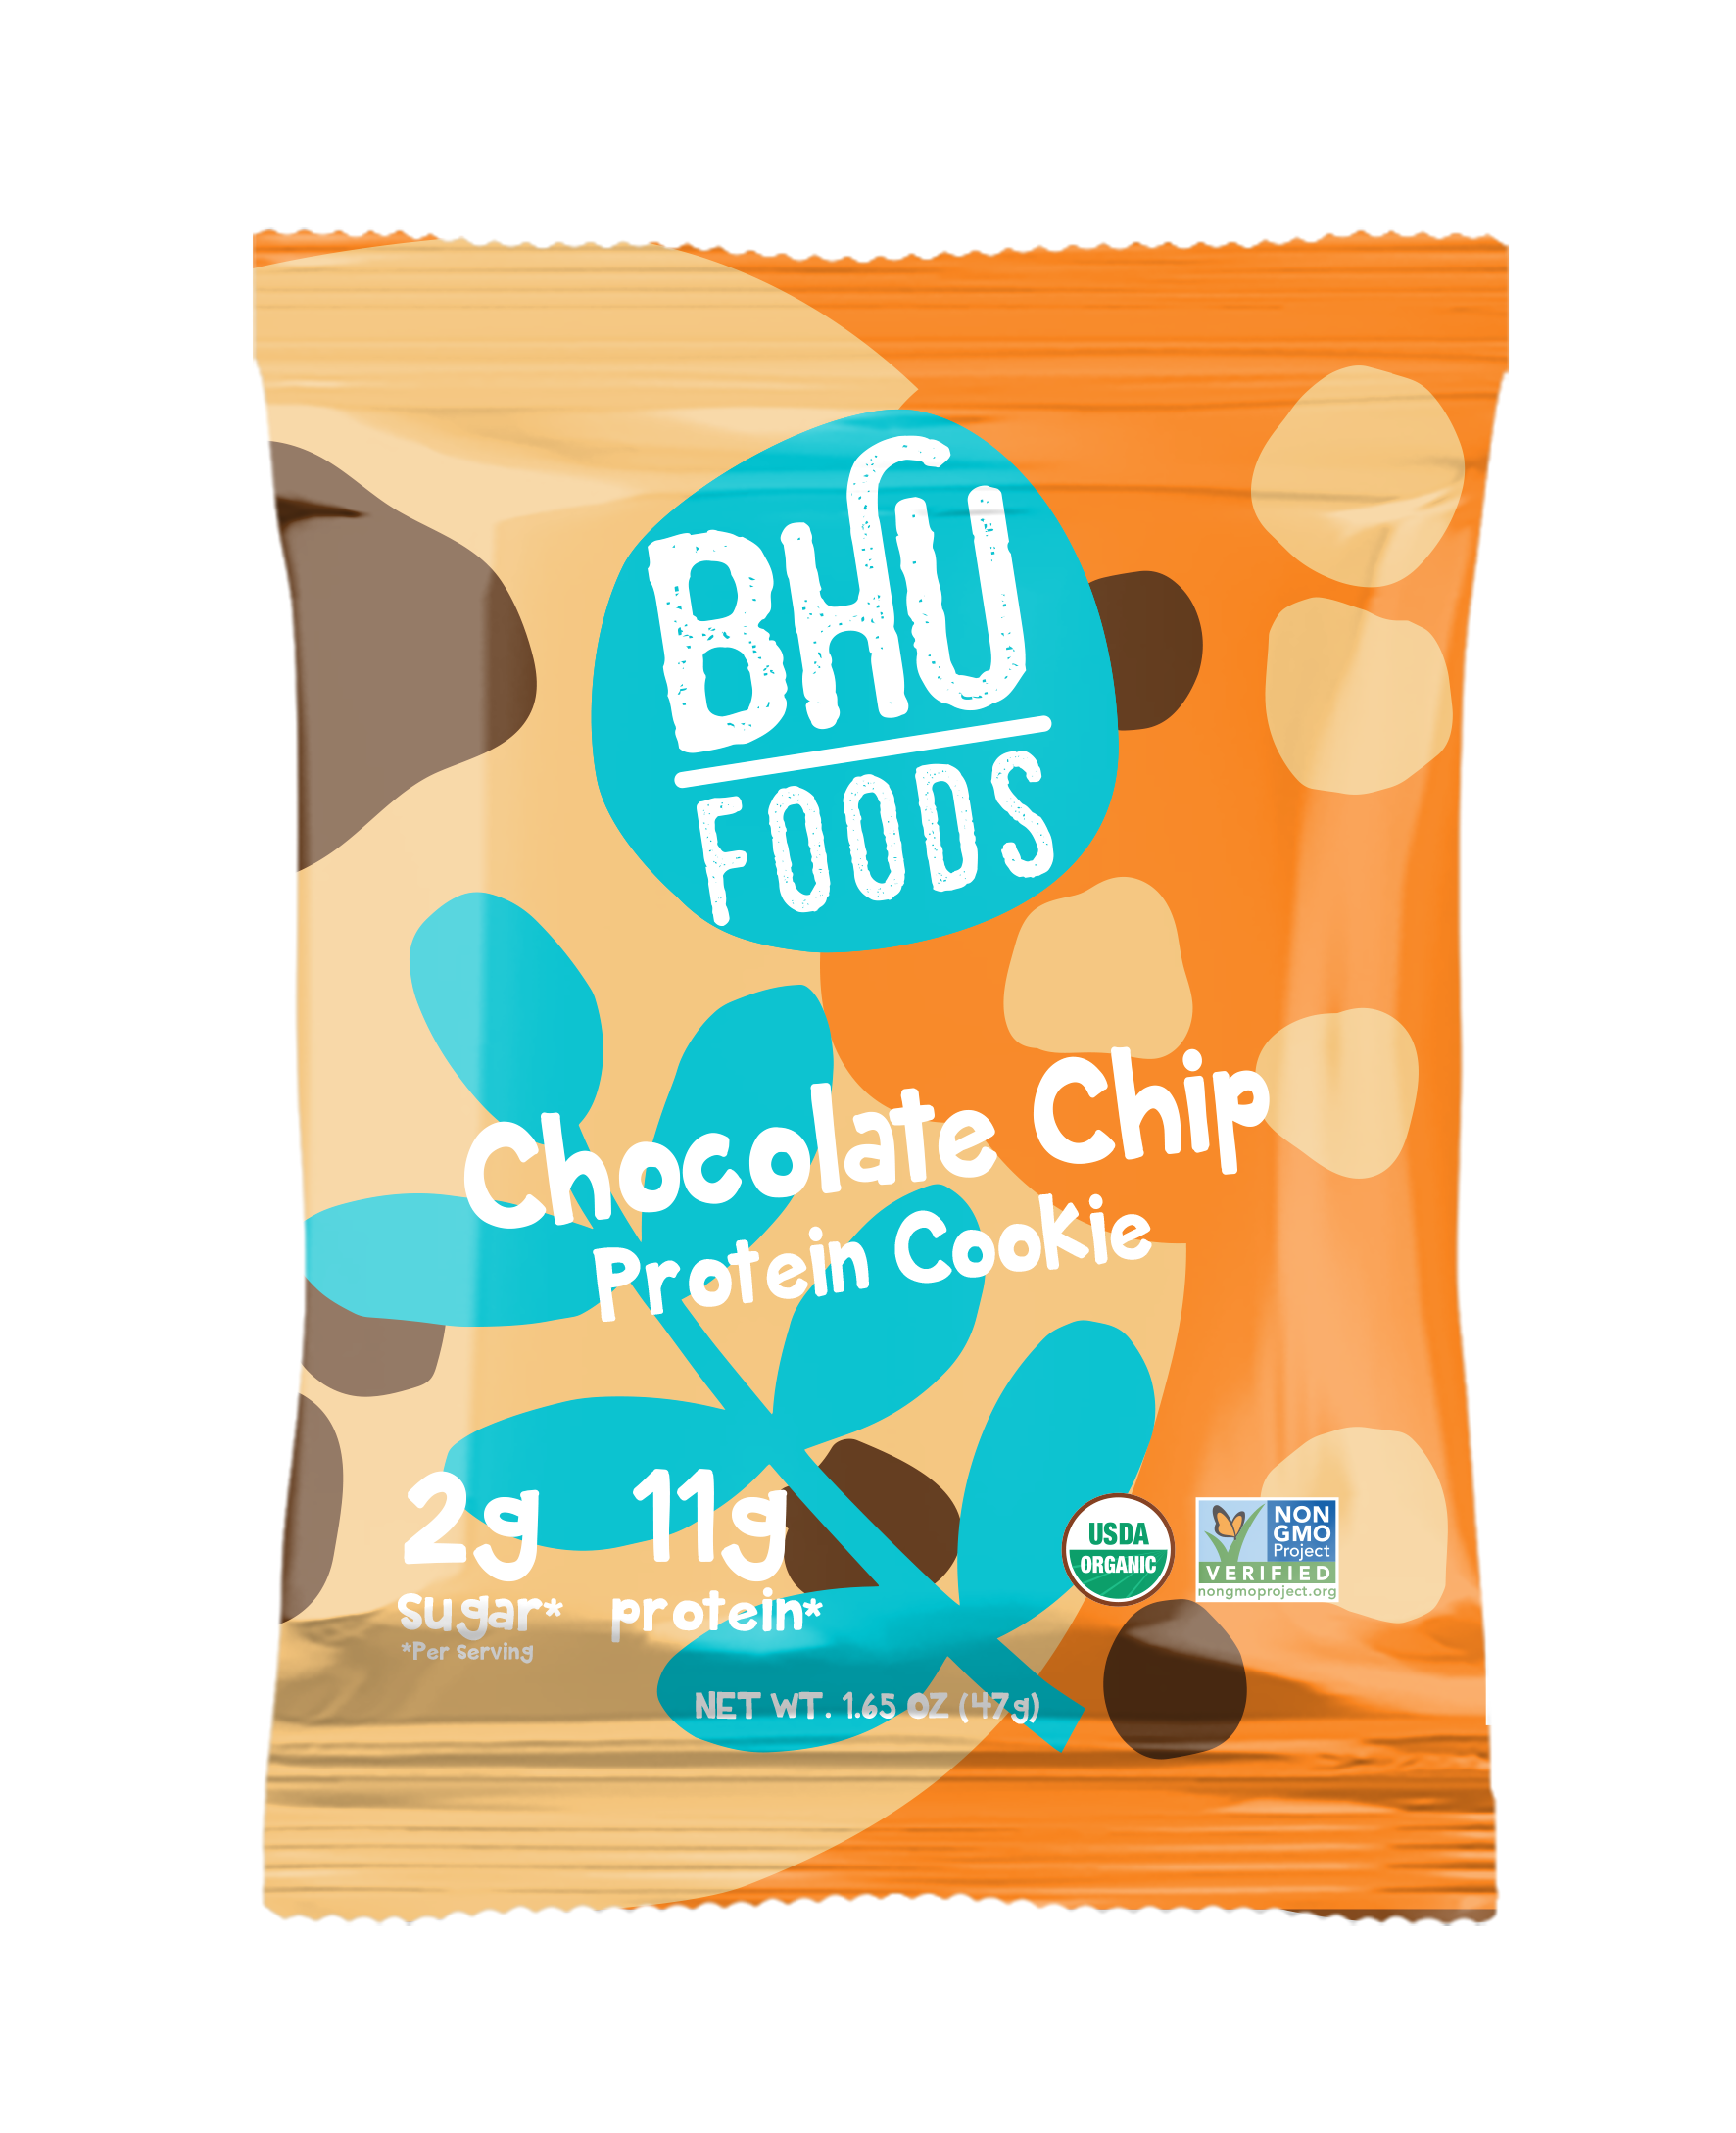 BHU Foods Vegan Protein Cookie - Chocolate Chip 12 innerpacks per case 16.5 oz